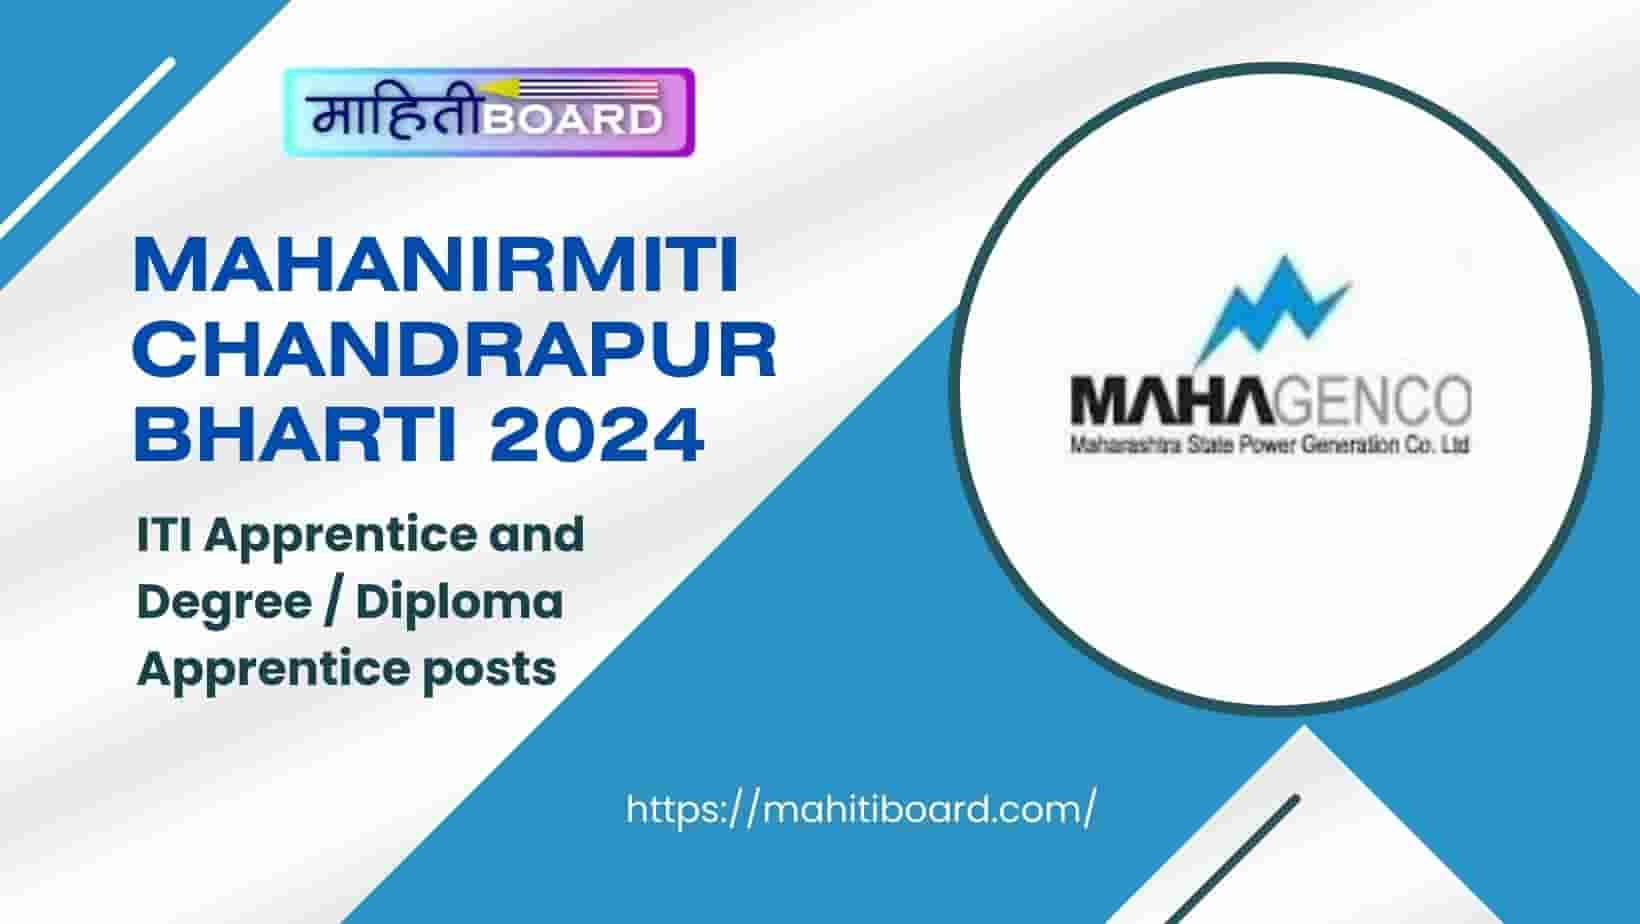 Mahanirmiti Chandrapur Bharti 2024